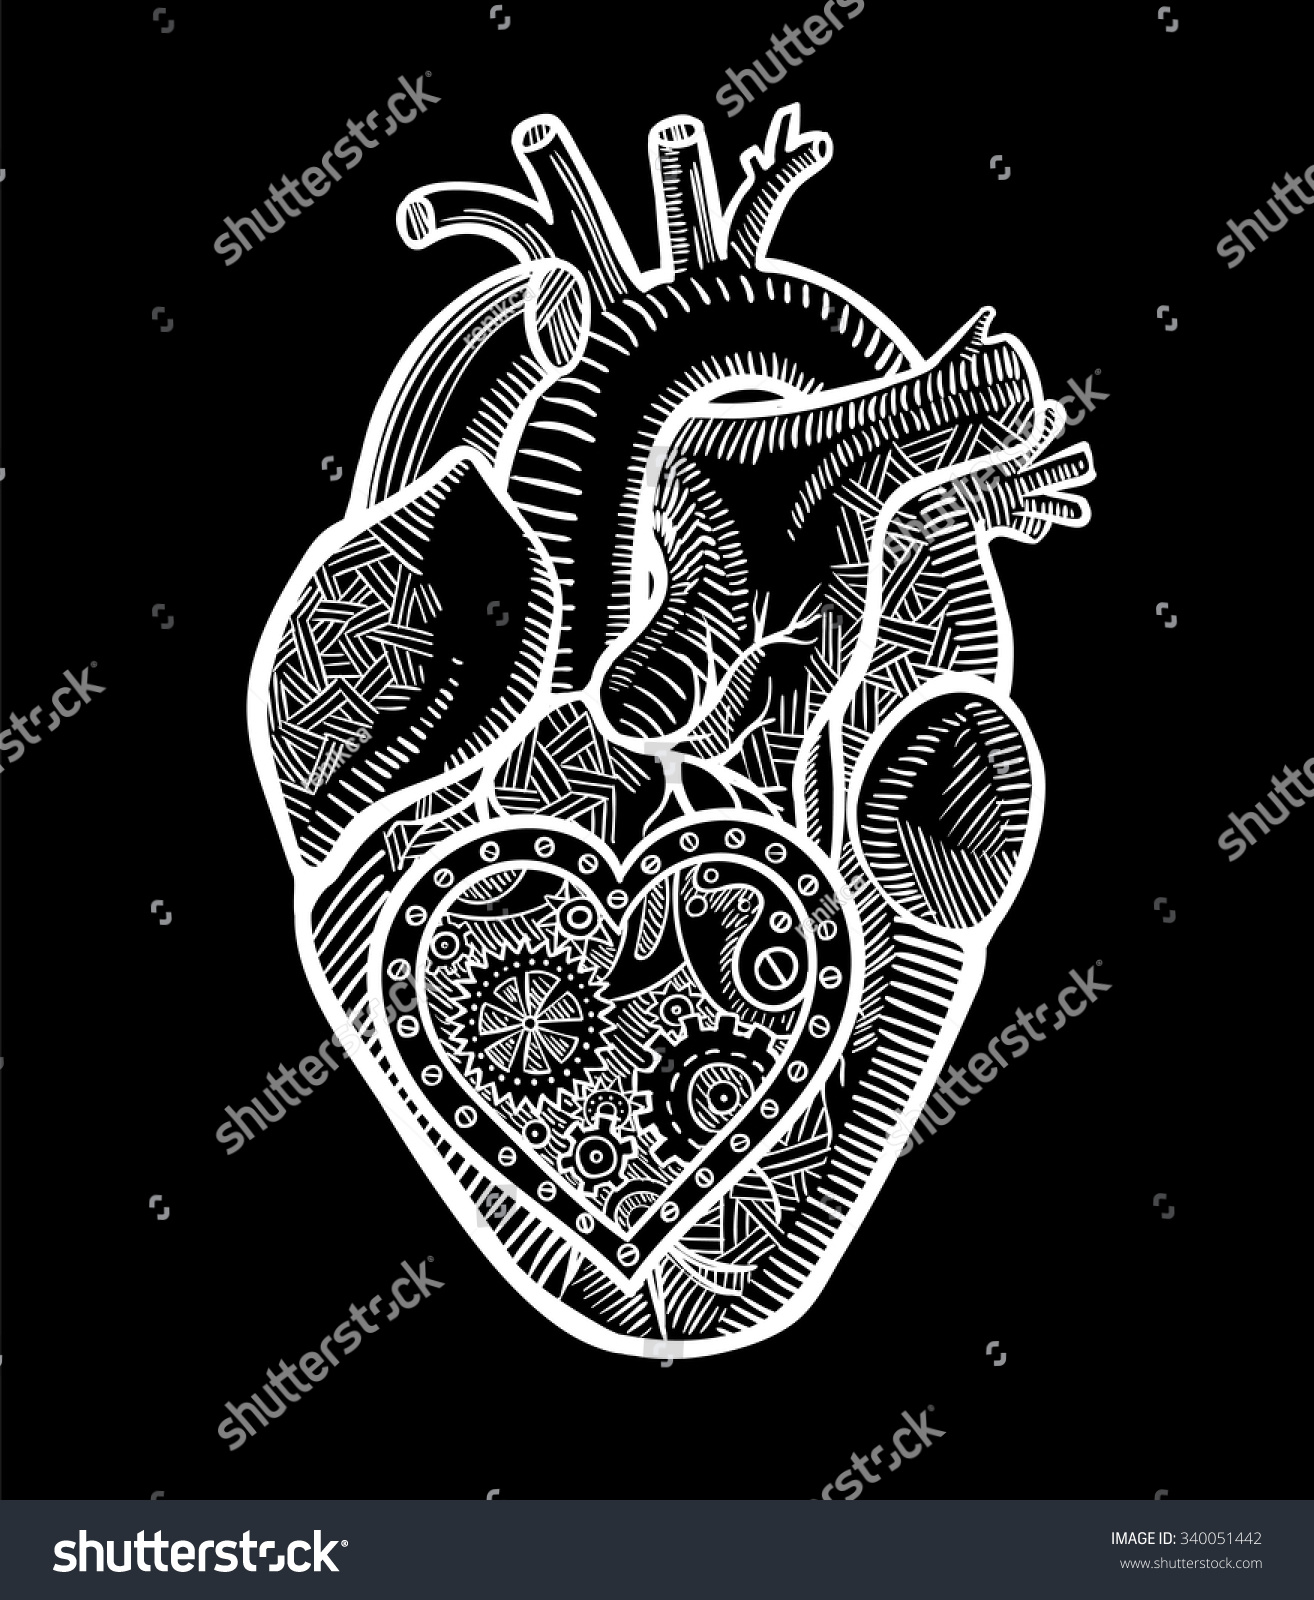 Human Heart Mechanical Heart Inside Graphic Stock Vector 340051442 ...